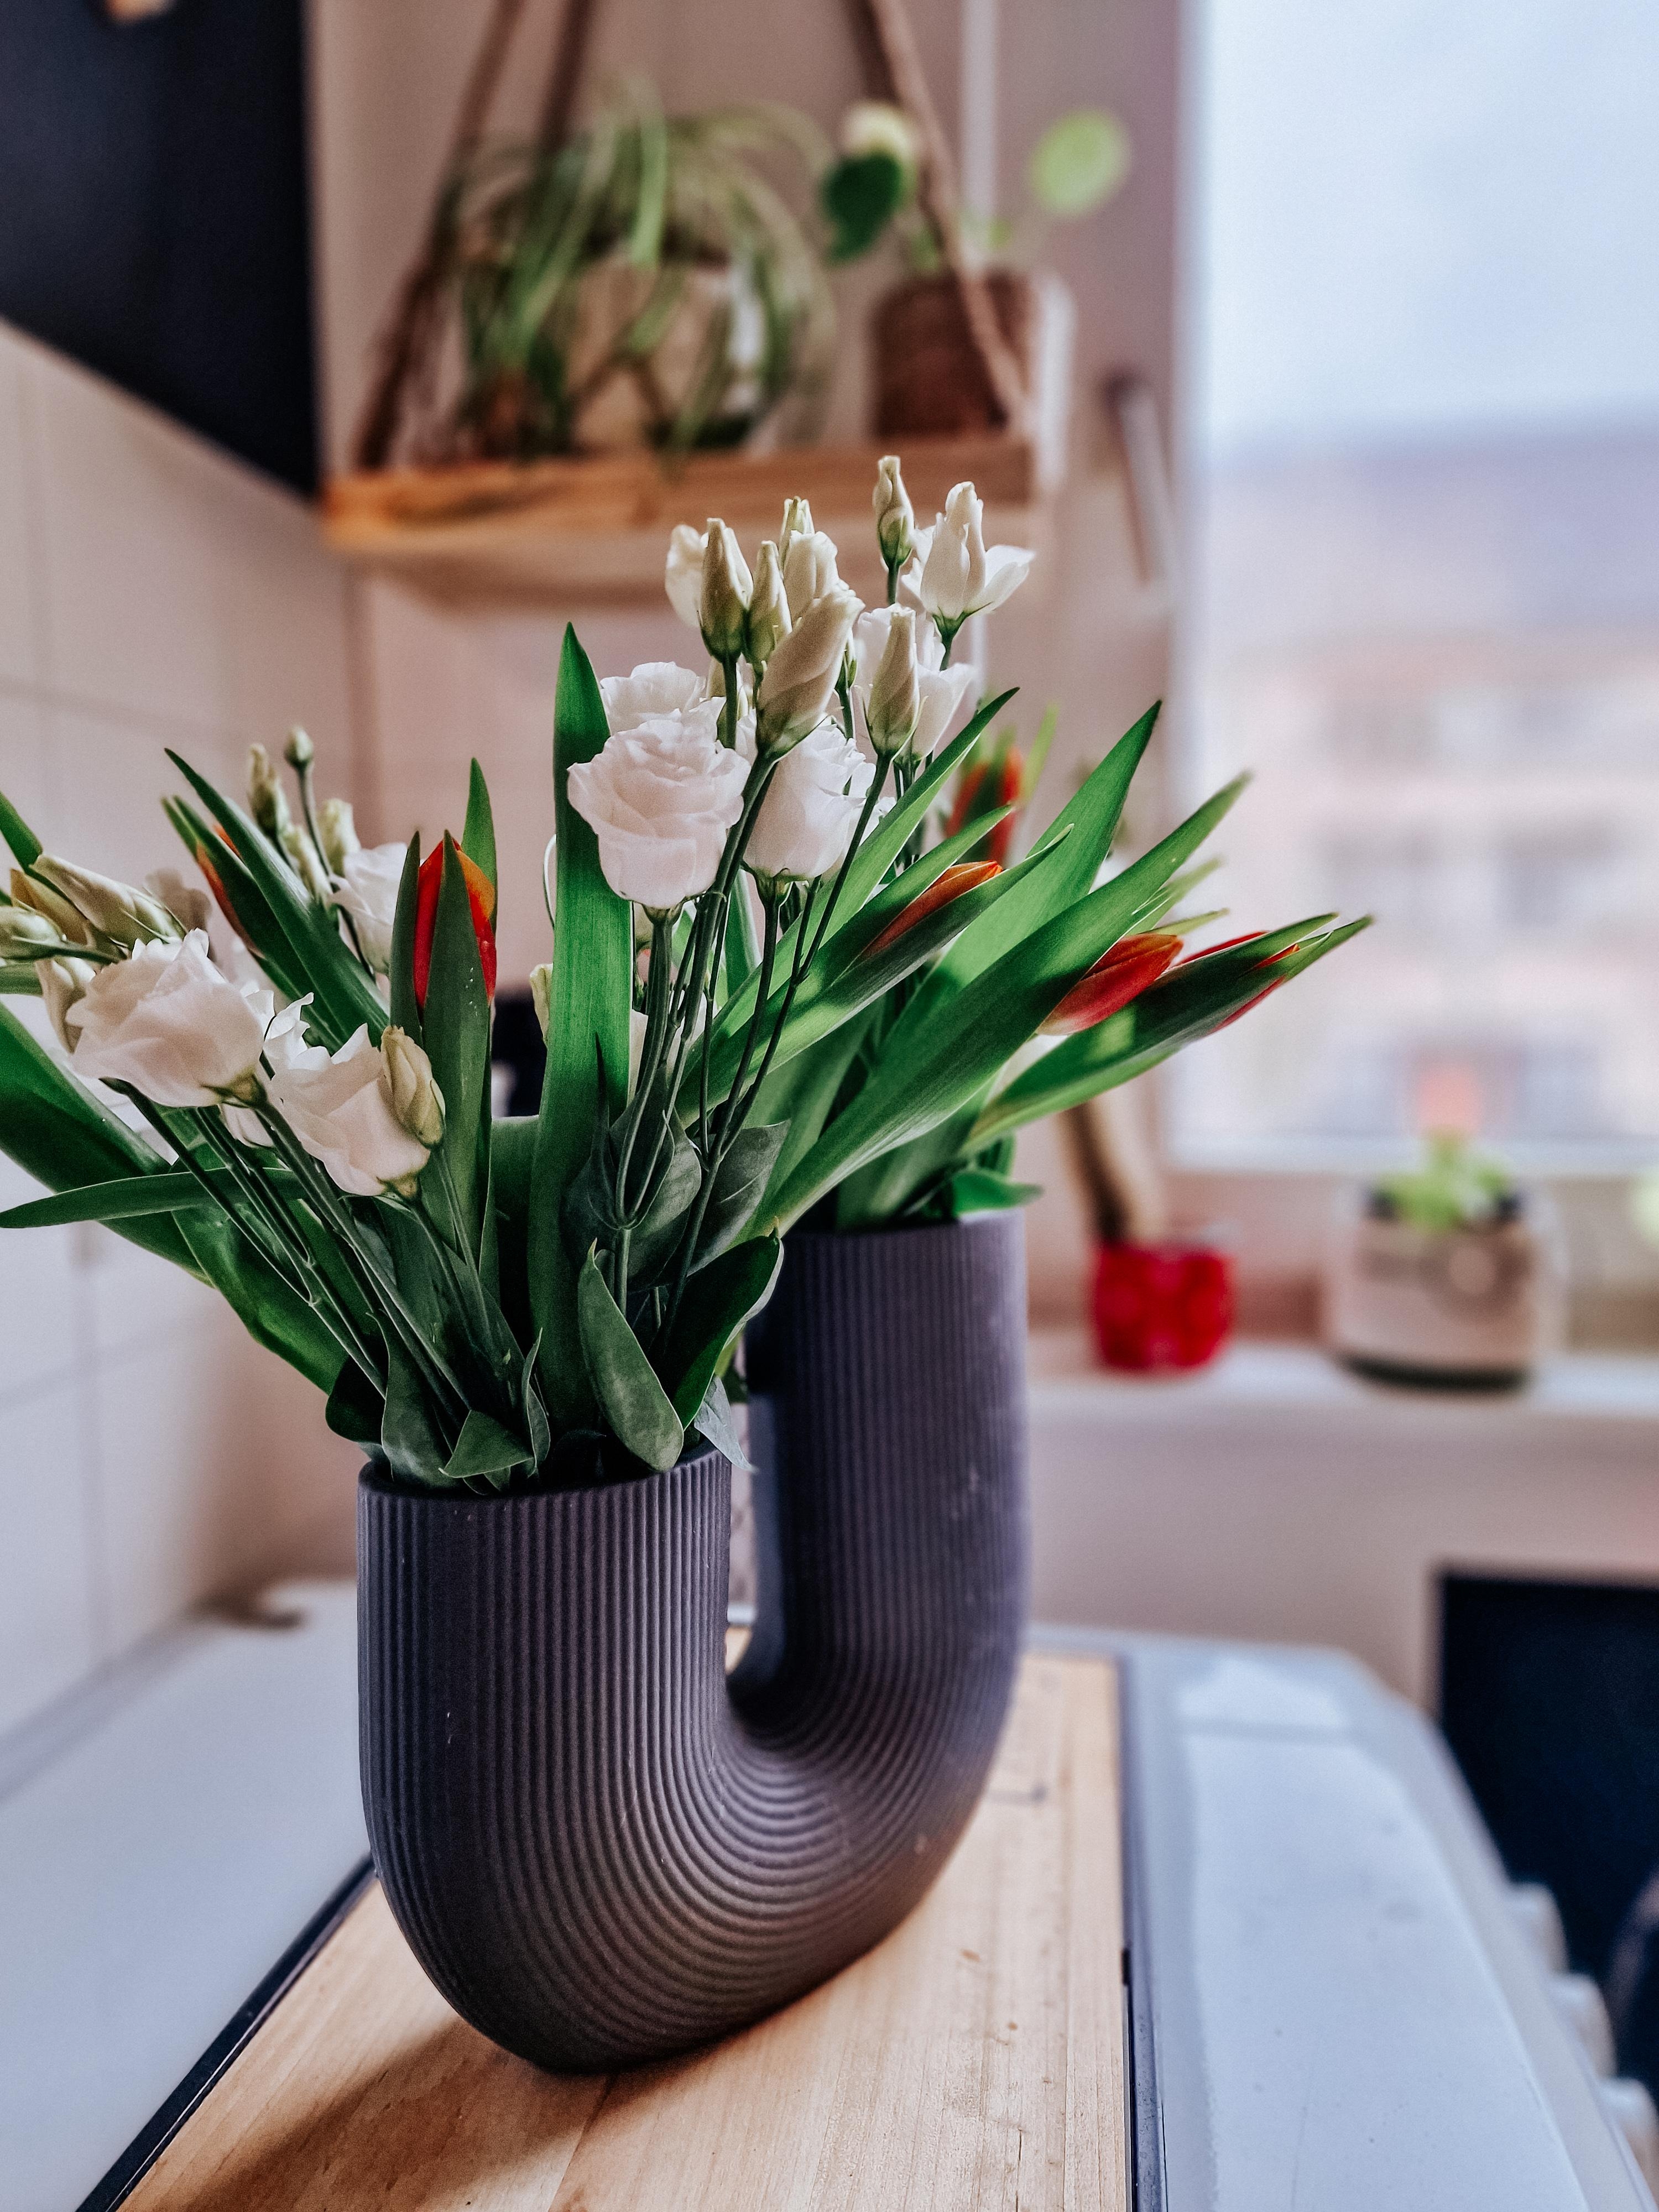 #Blumen #Enzian #Tulpen #storefactory #vasenliebe #Blumenstrauß #icanbuymyselfflowers #vonmirfürmich